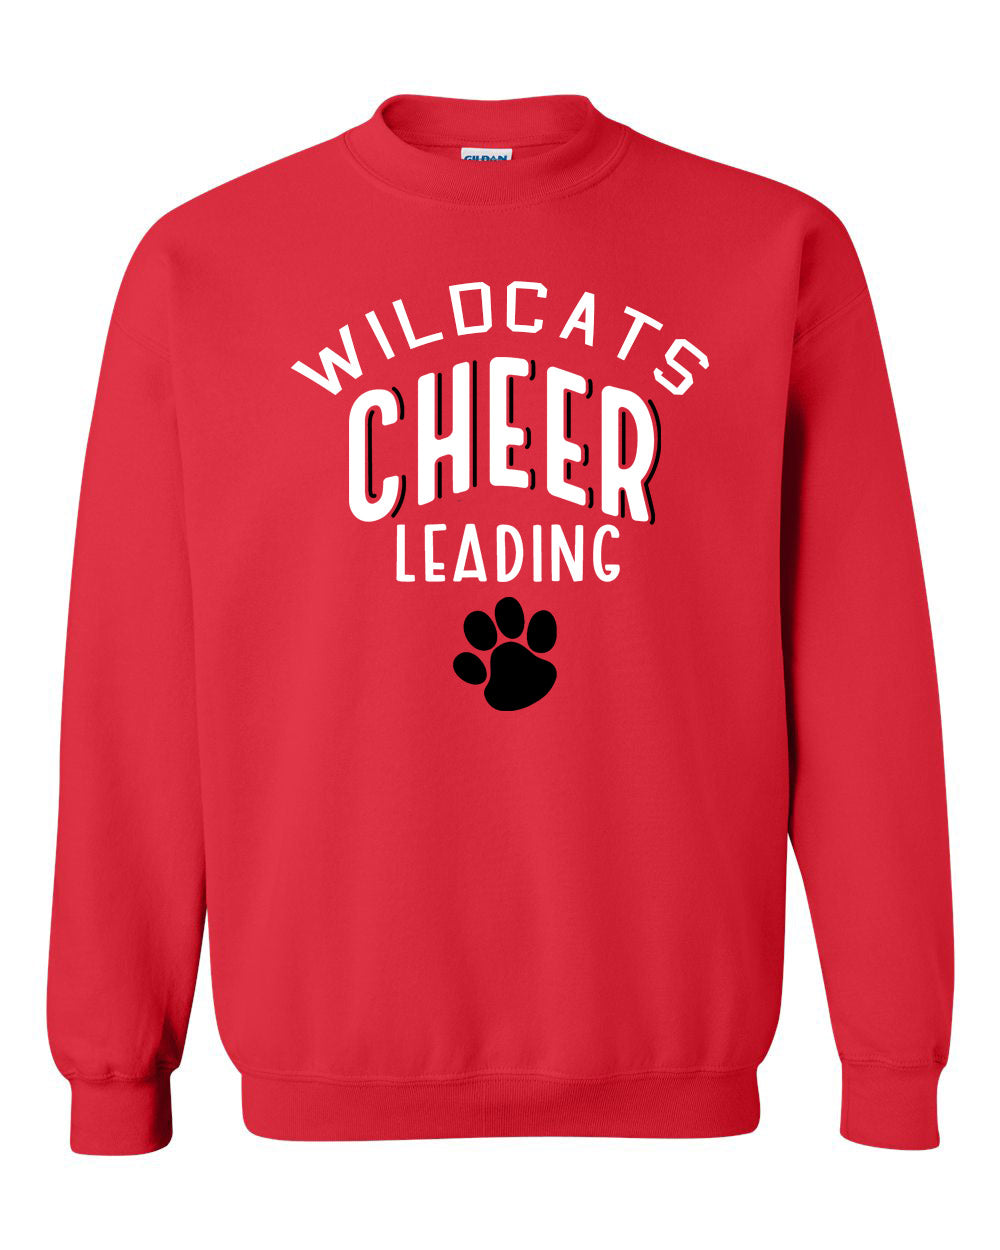 Wildcats Cheer Design 5 non hooded sweatshirt